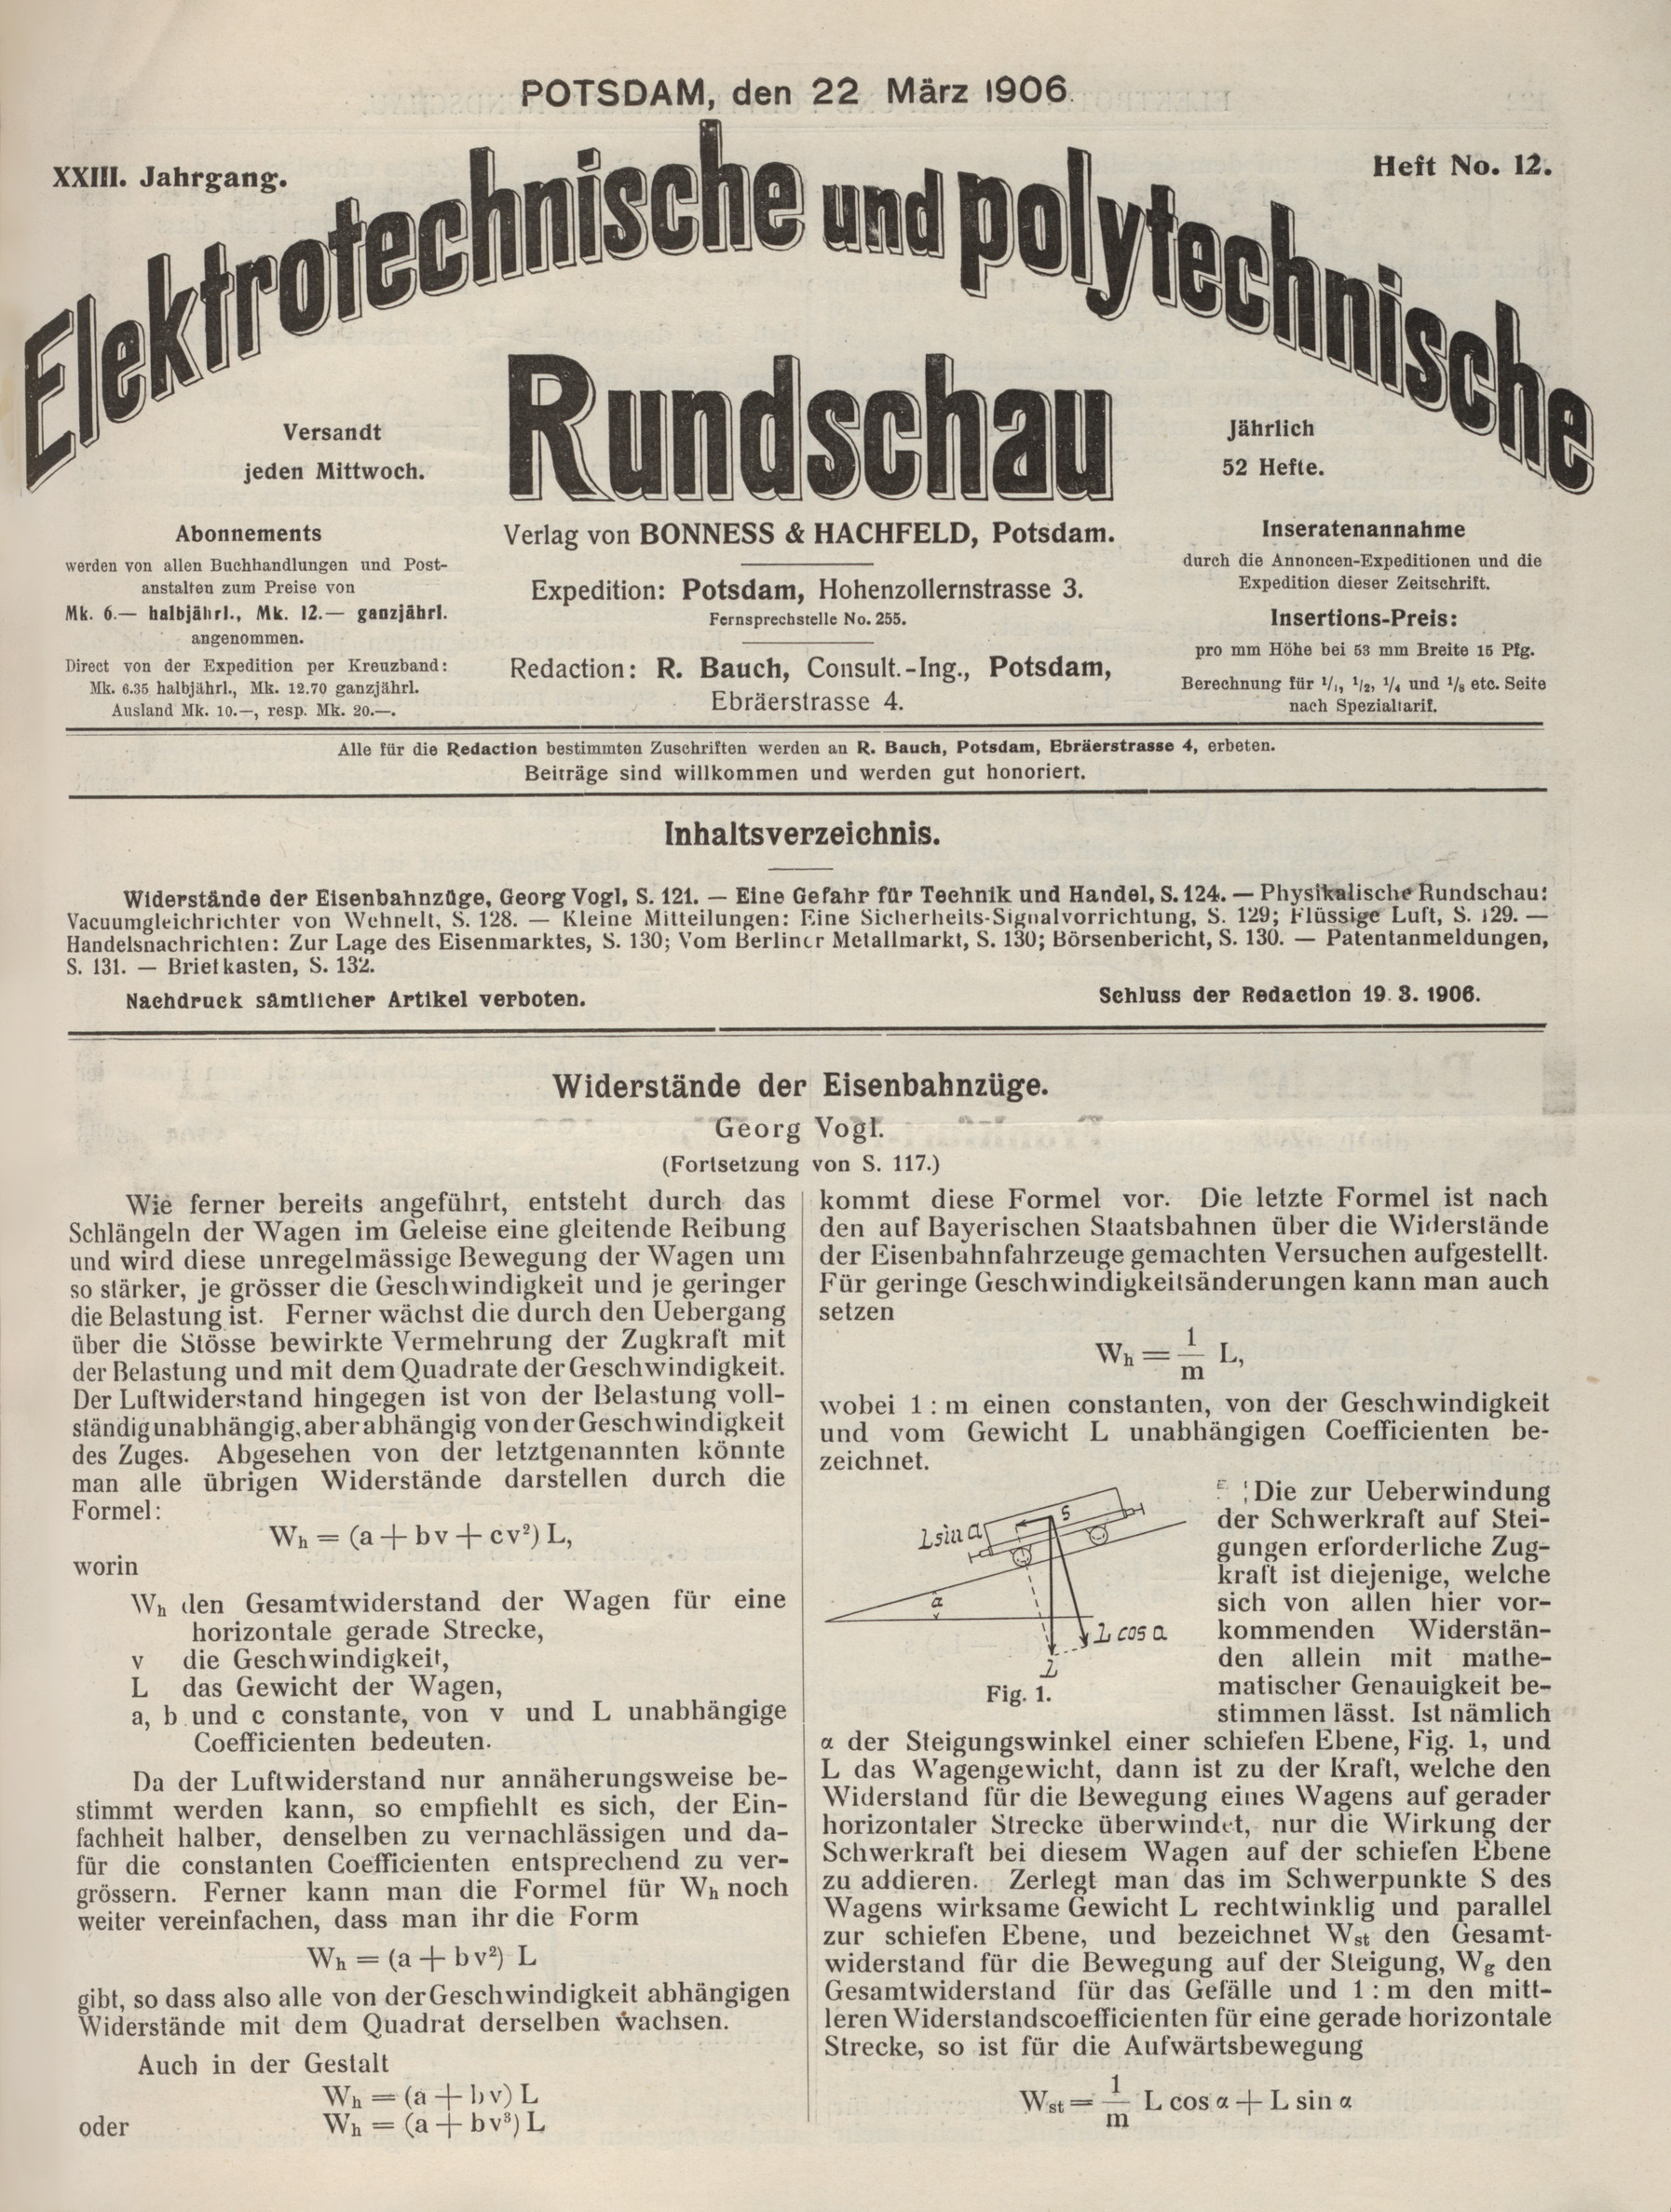 Elektrotechnische und polytechnische Rundschau, XXIII. Jahrgang, Heft No. 12